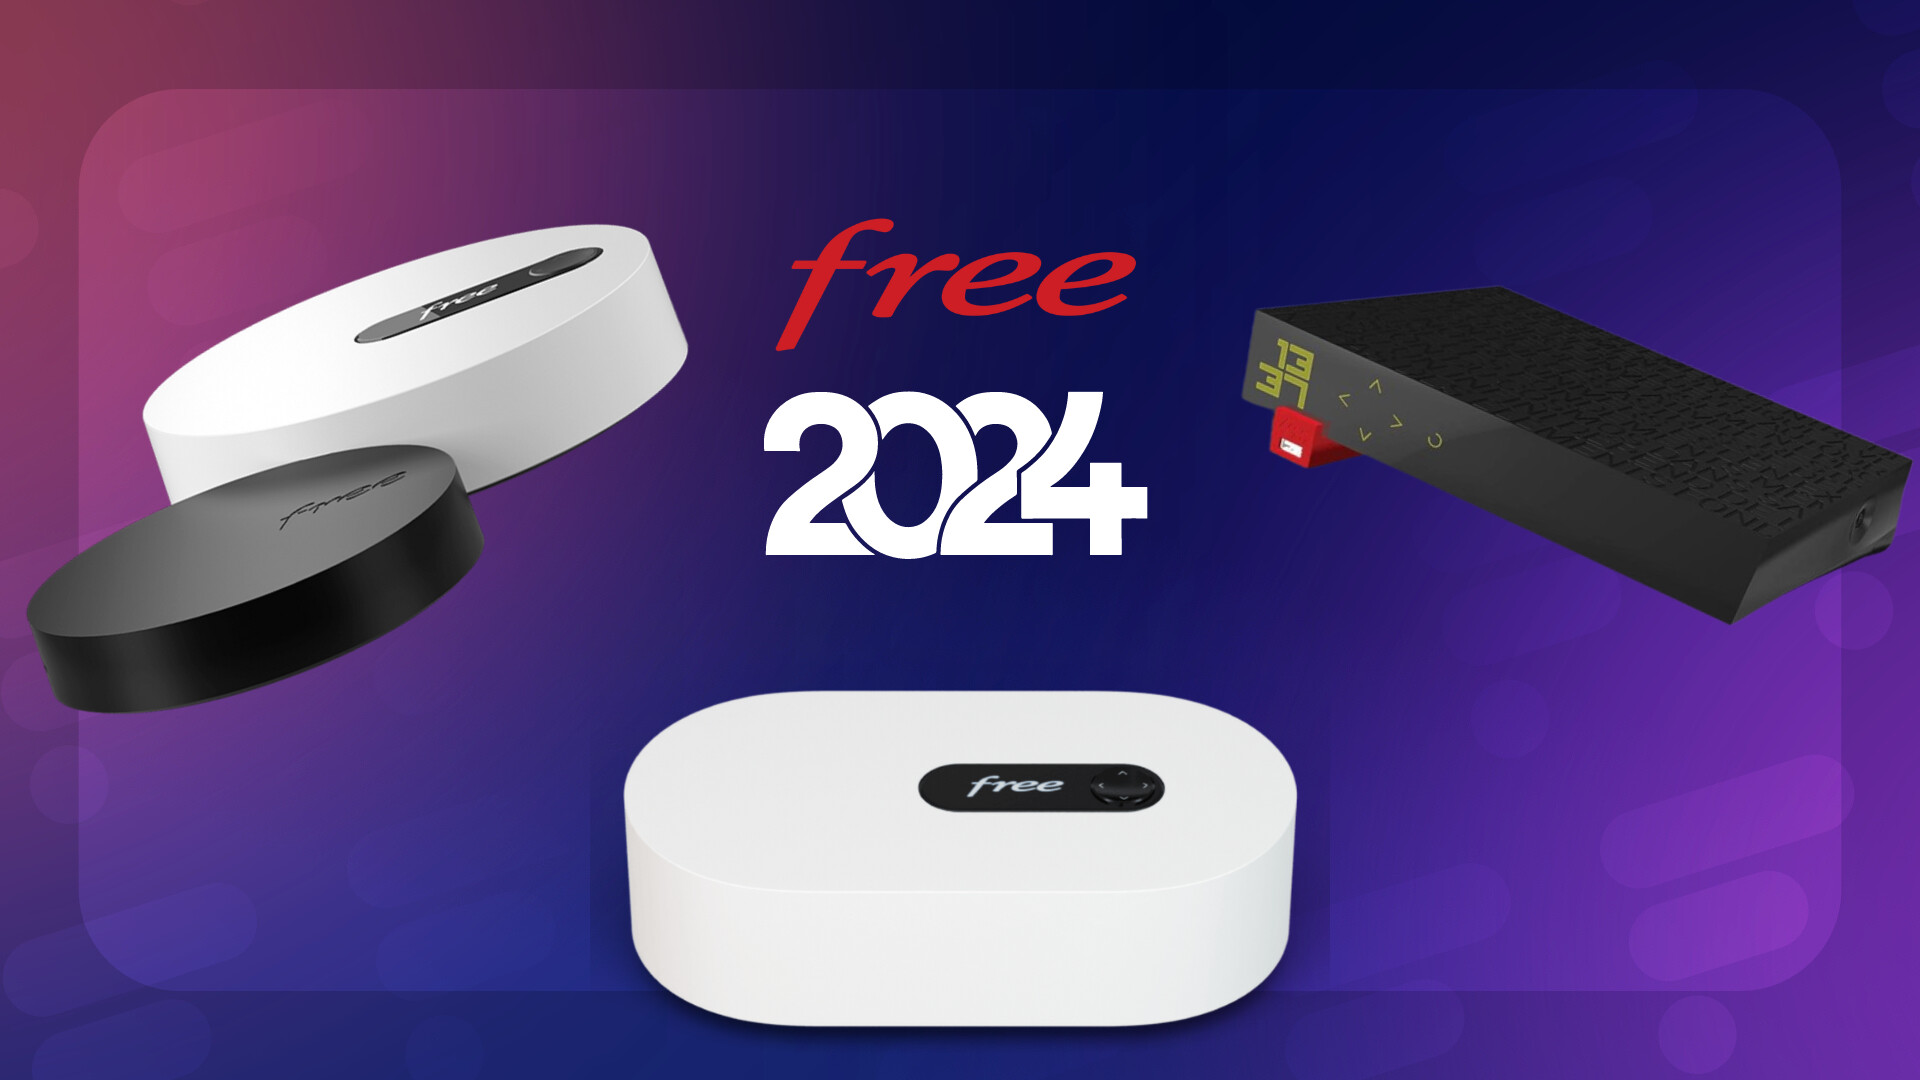 Ce qui change pour les abonnés Freebox Mini 4K, Revolution et Crystal avec  l'arrivée de la Freebox Pop